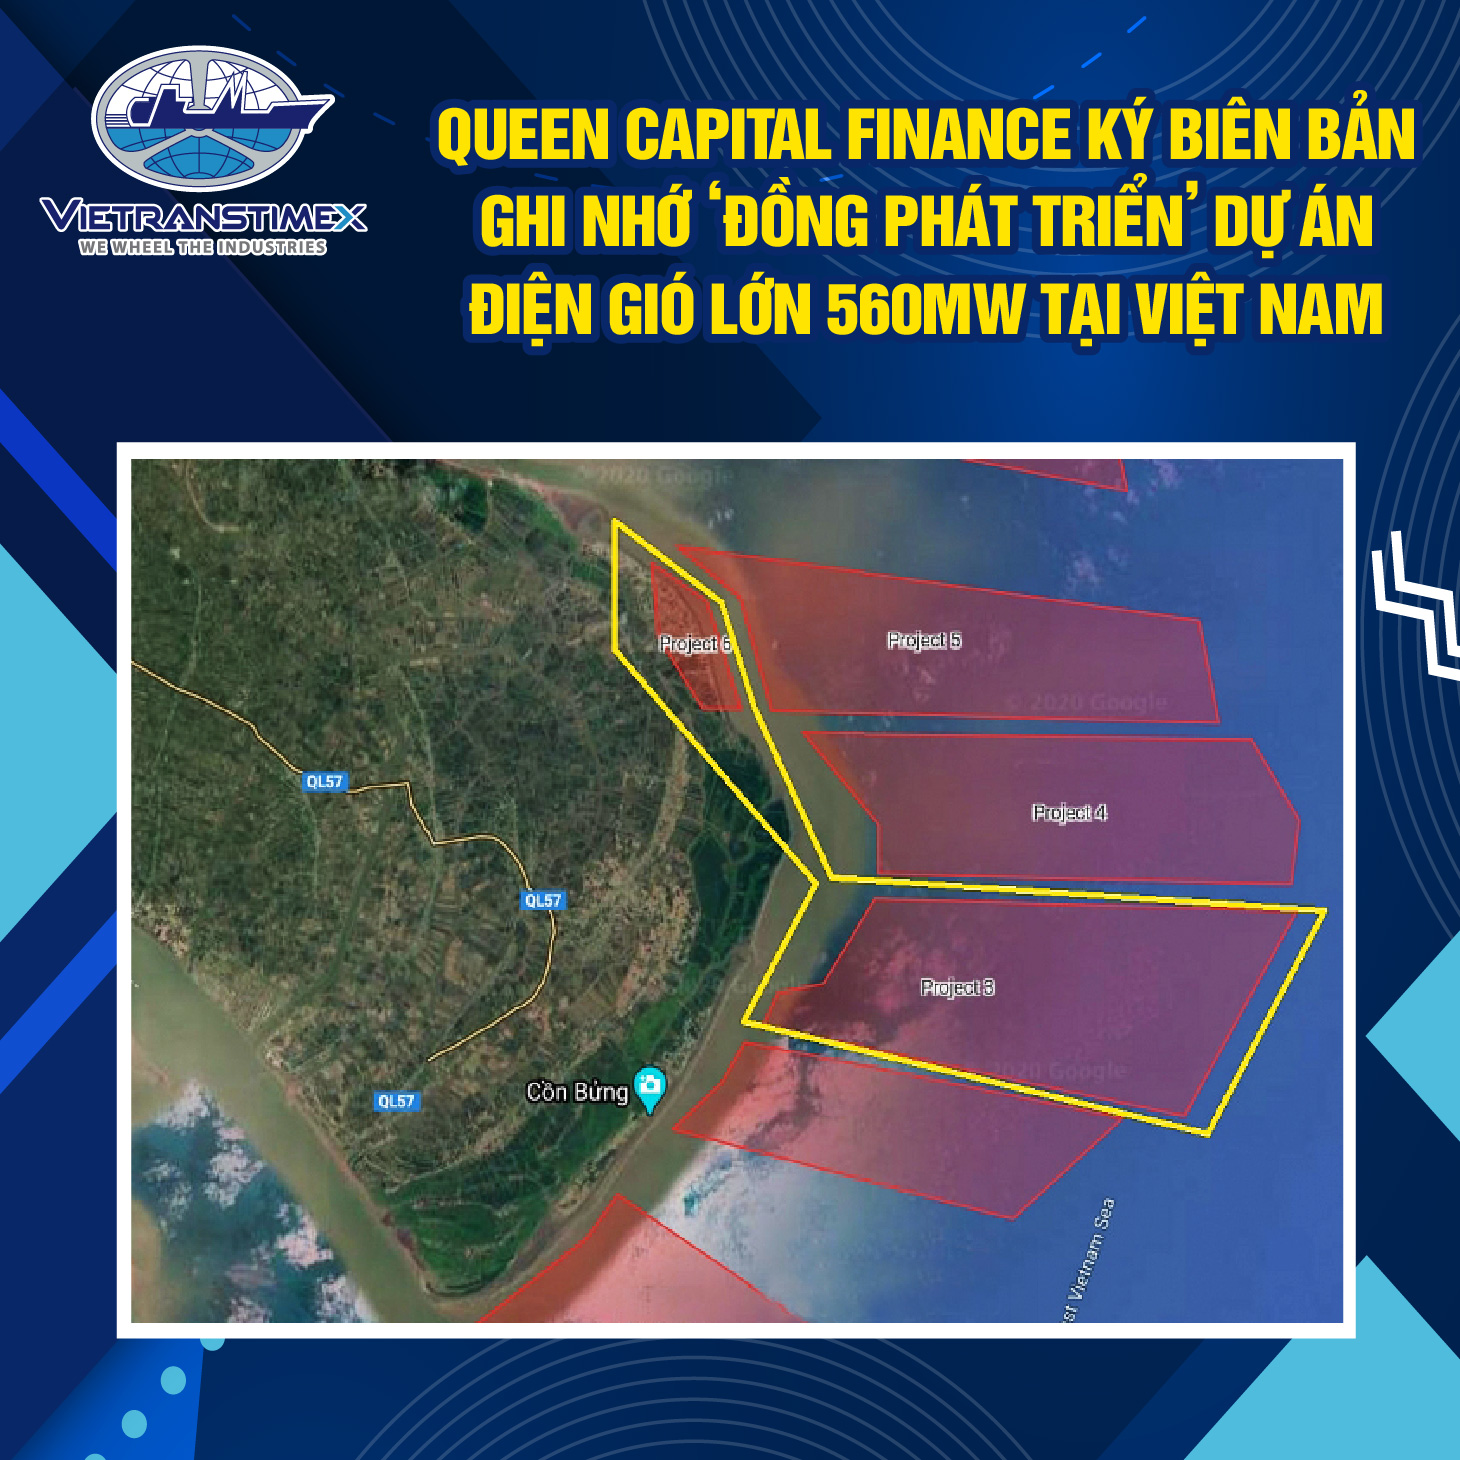 Queen Capital Finance Ký Biên Bản Ghi Nhớ ‘Đồng Phát Triển’ Dự Án Điện Gió Lớn 560MW Tại Việt Nam